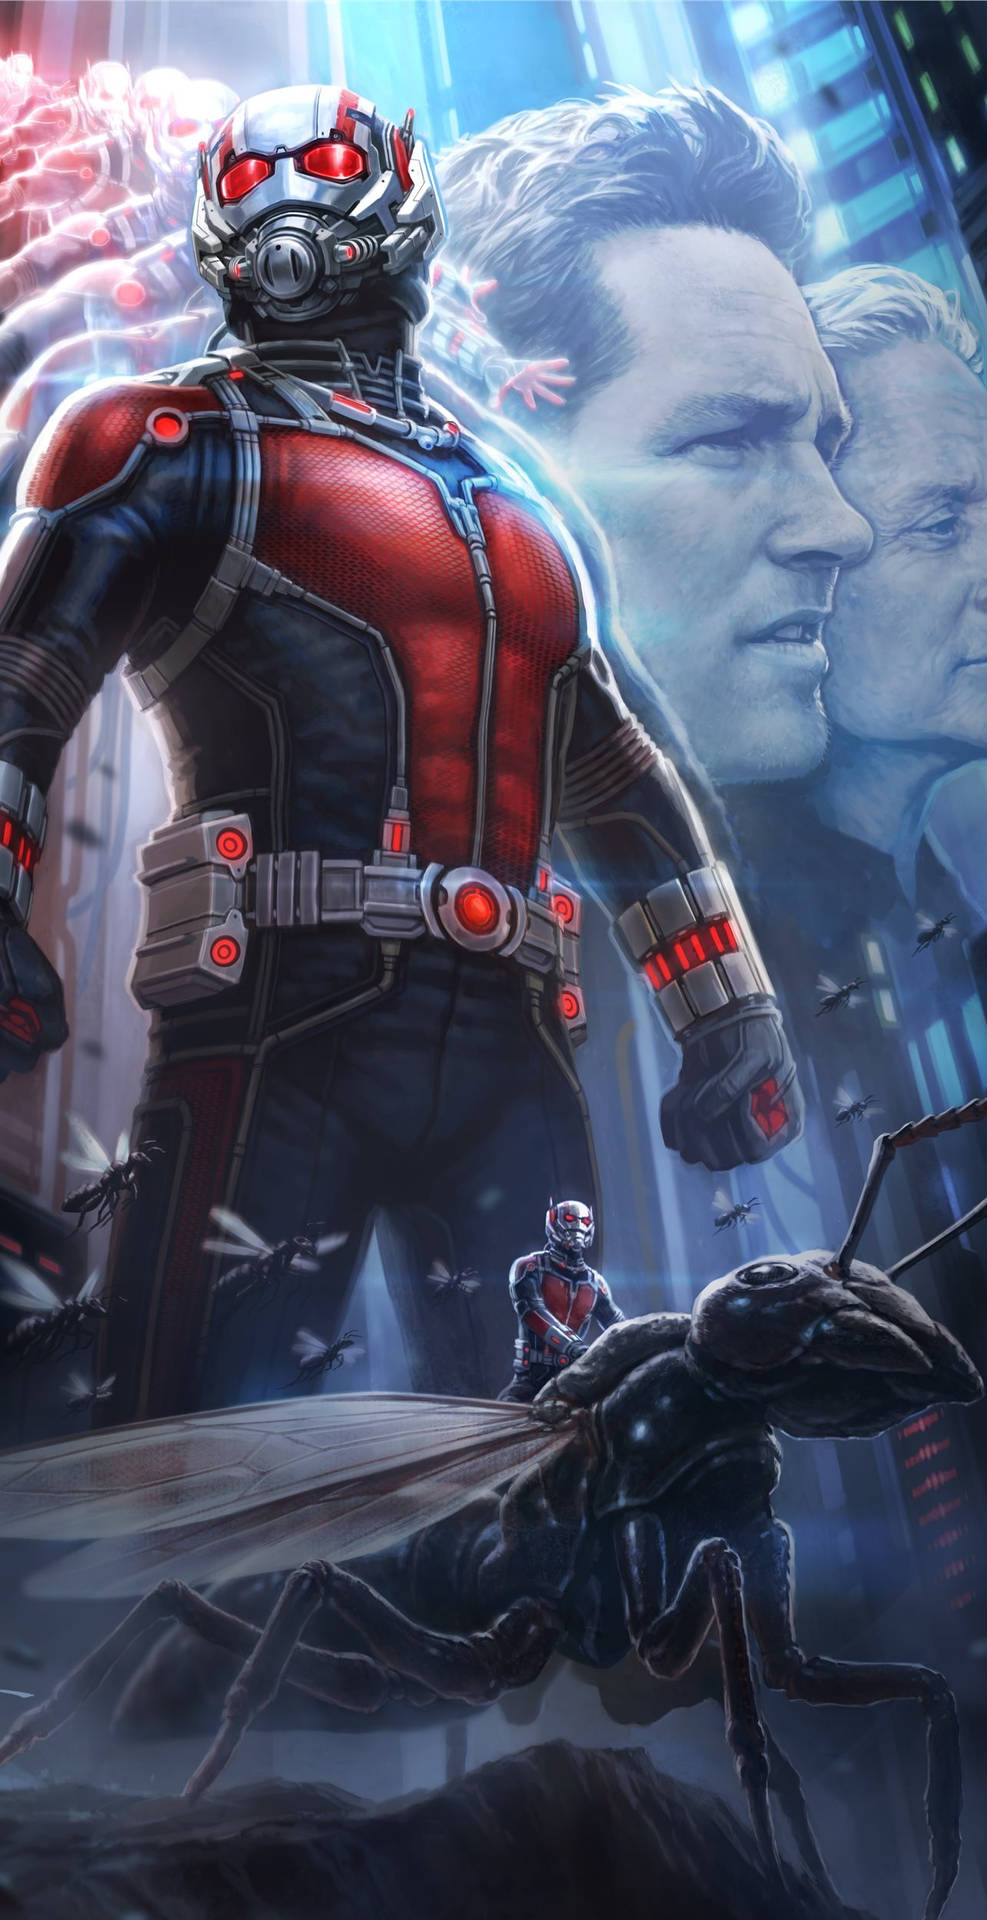 Ant Man Superhero Film 2015 Wallpaper